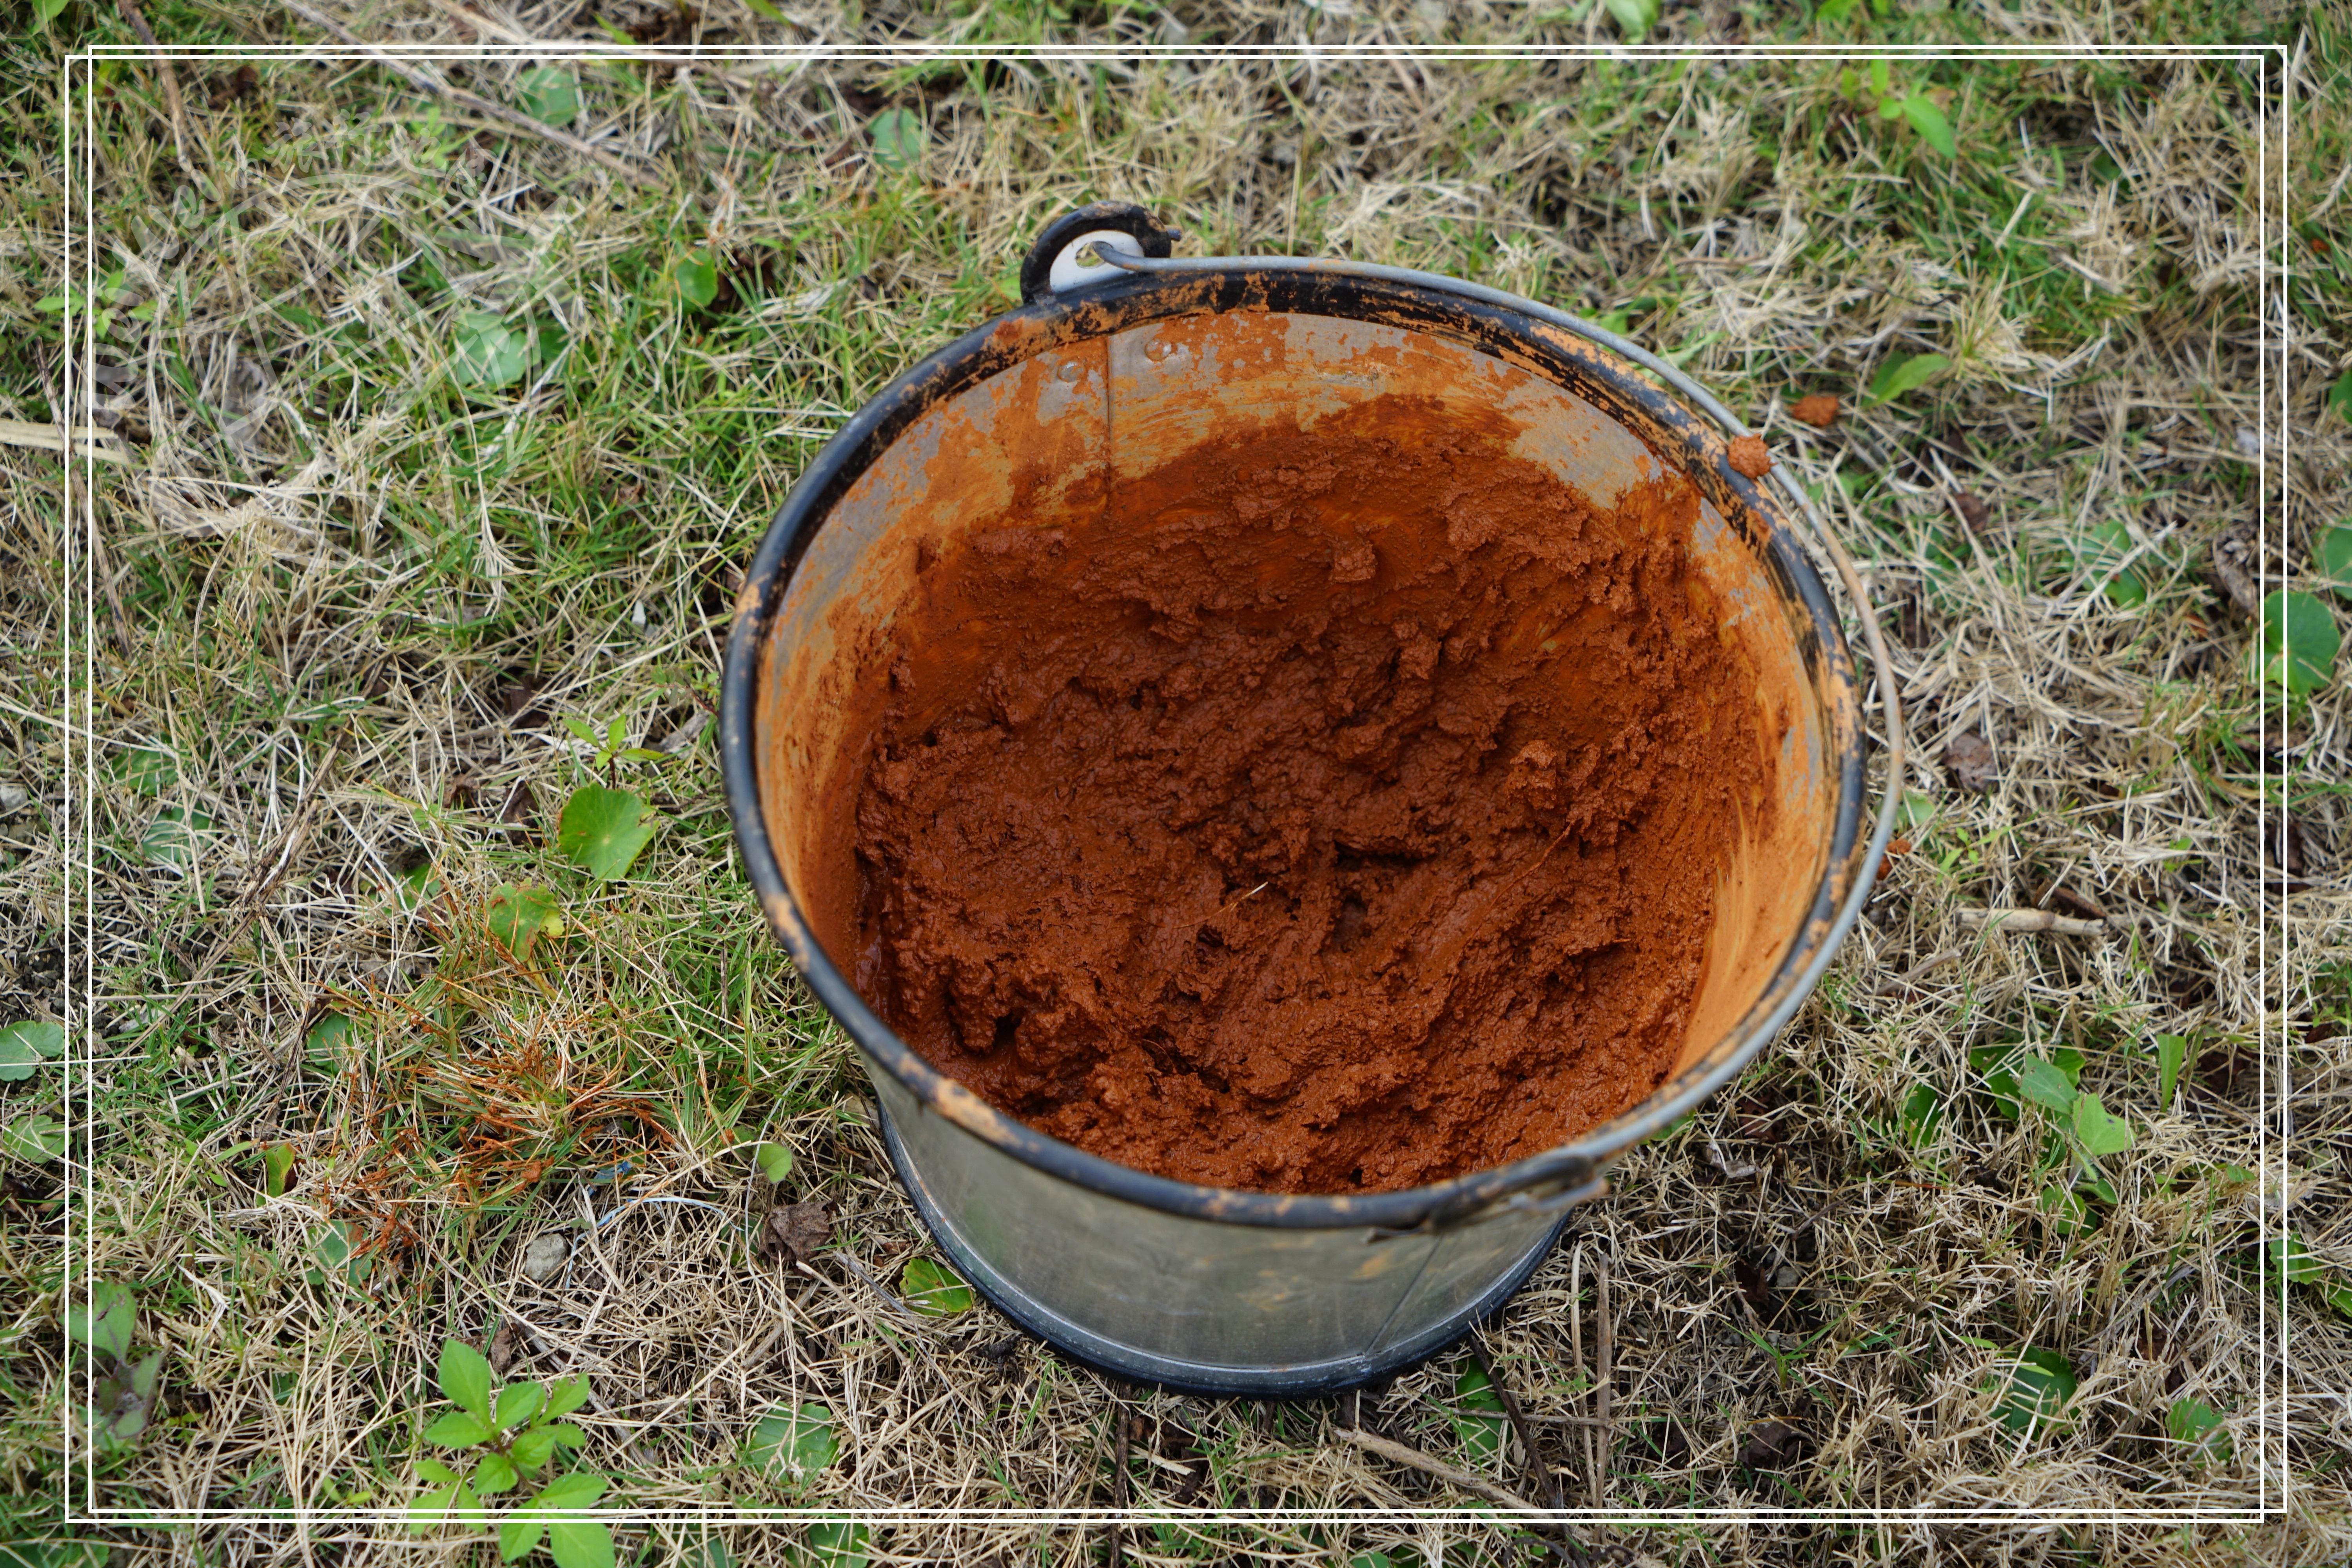 ▲這鍋是專門包雞蛋用的紅土，材質很黏密，摸起來很紮實，很有在玩泥巴的感覺